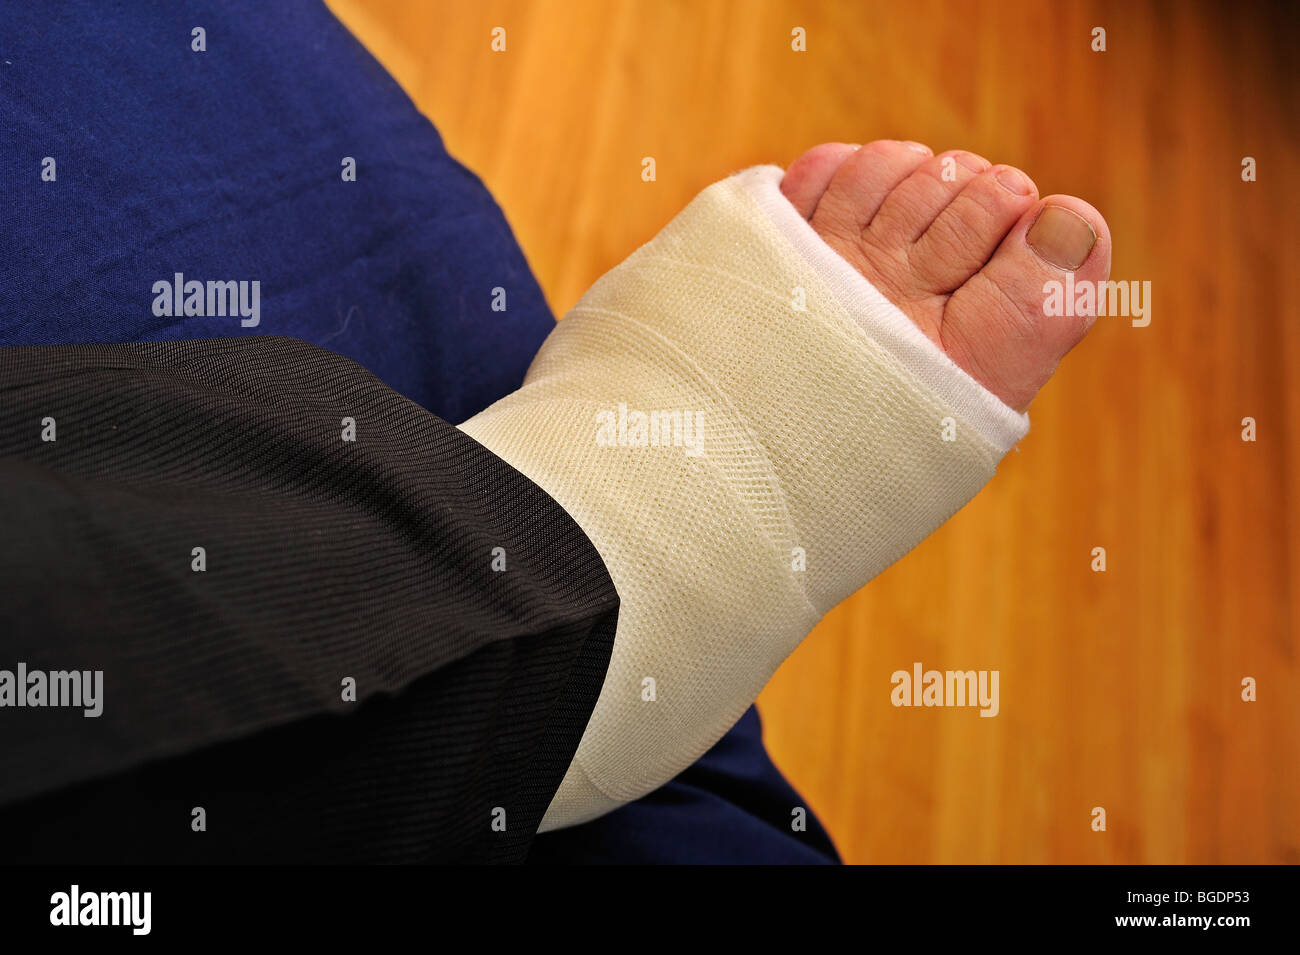 Détail d'une fracture au pied de l'homme dans un plâtre, reposant sur un coussin Banque D'Images